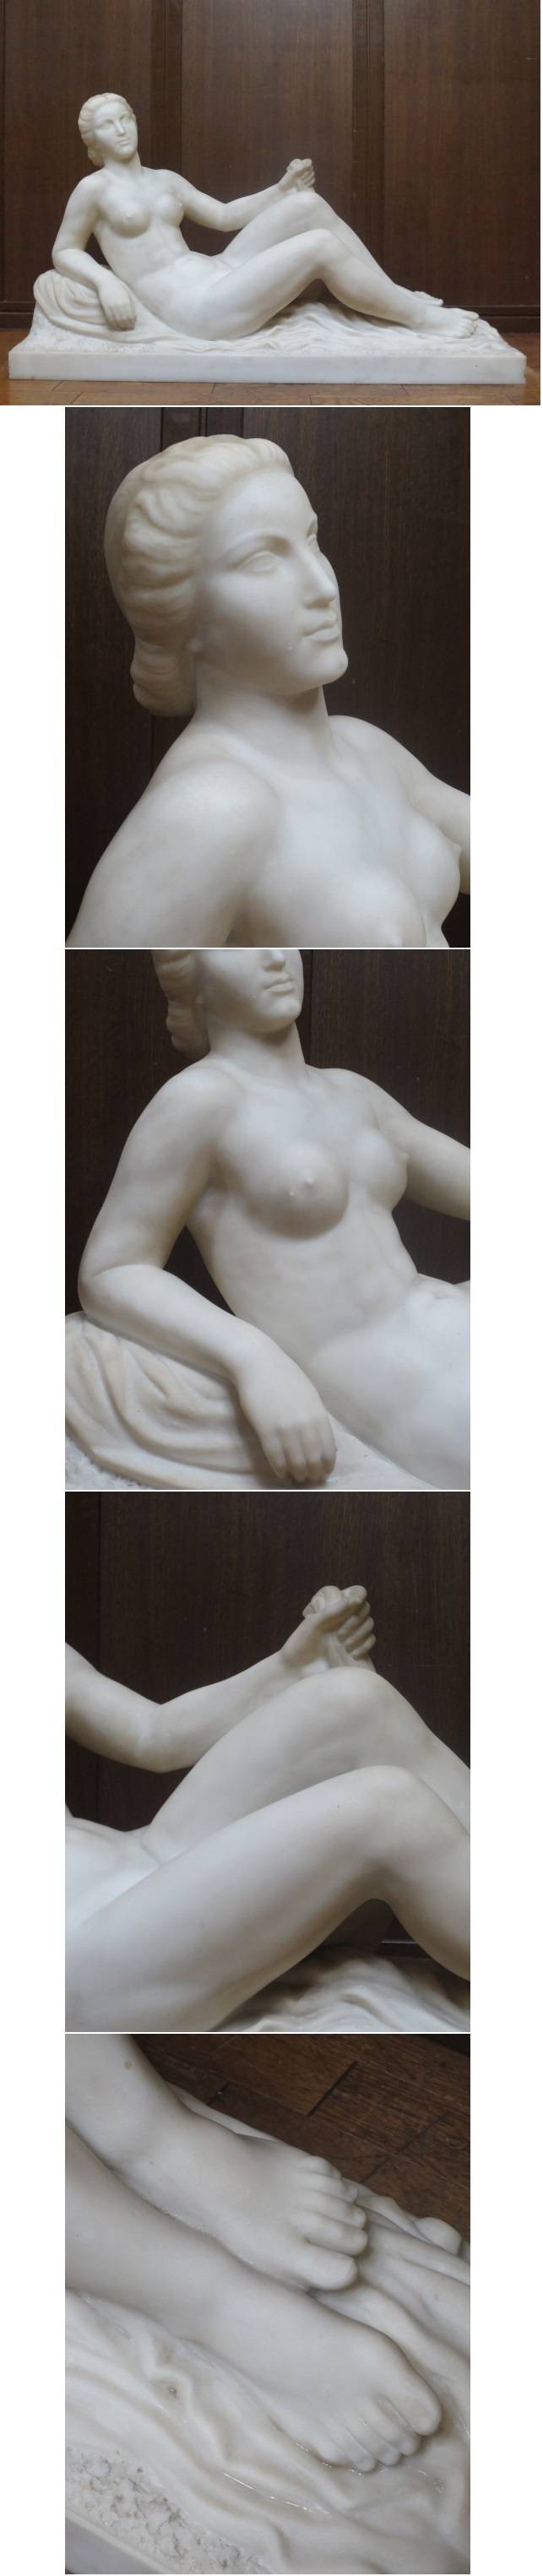 逸品 西洋美術 L.GIBERT 大理石 彫刻 裸婦像 サイン入り 幅84㎝ 高さ49㎝ 重さ75㎏ 裸婦 美人像 女性像 資産家収蔵品 －日本代購代Bid第一推介「Funbid」